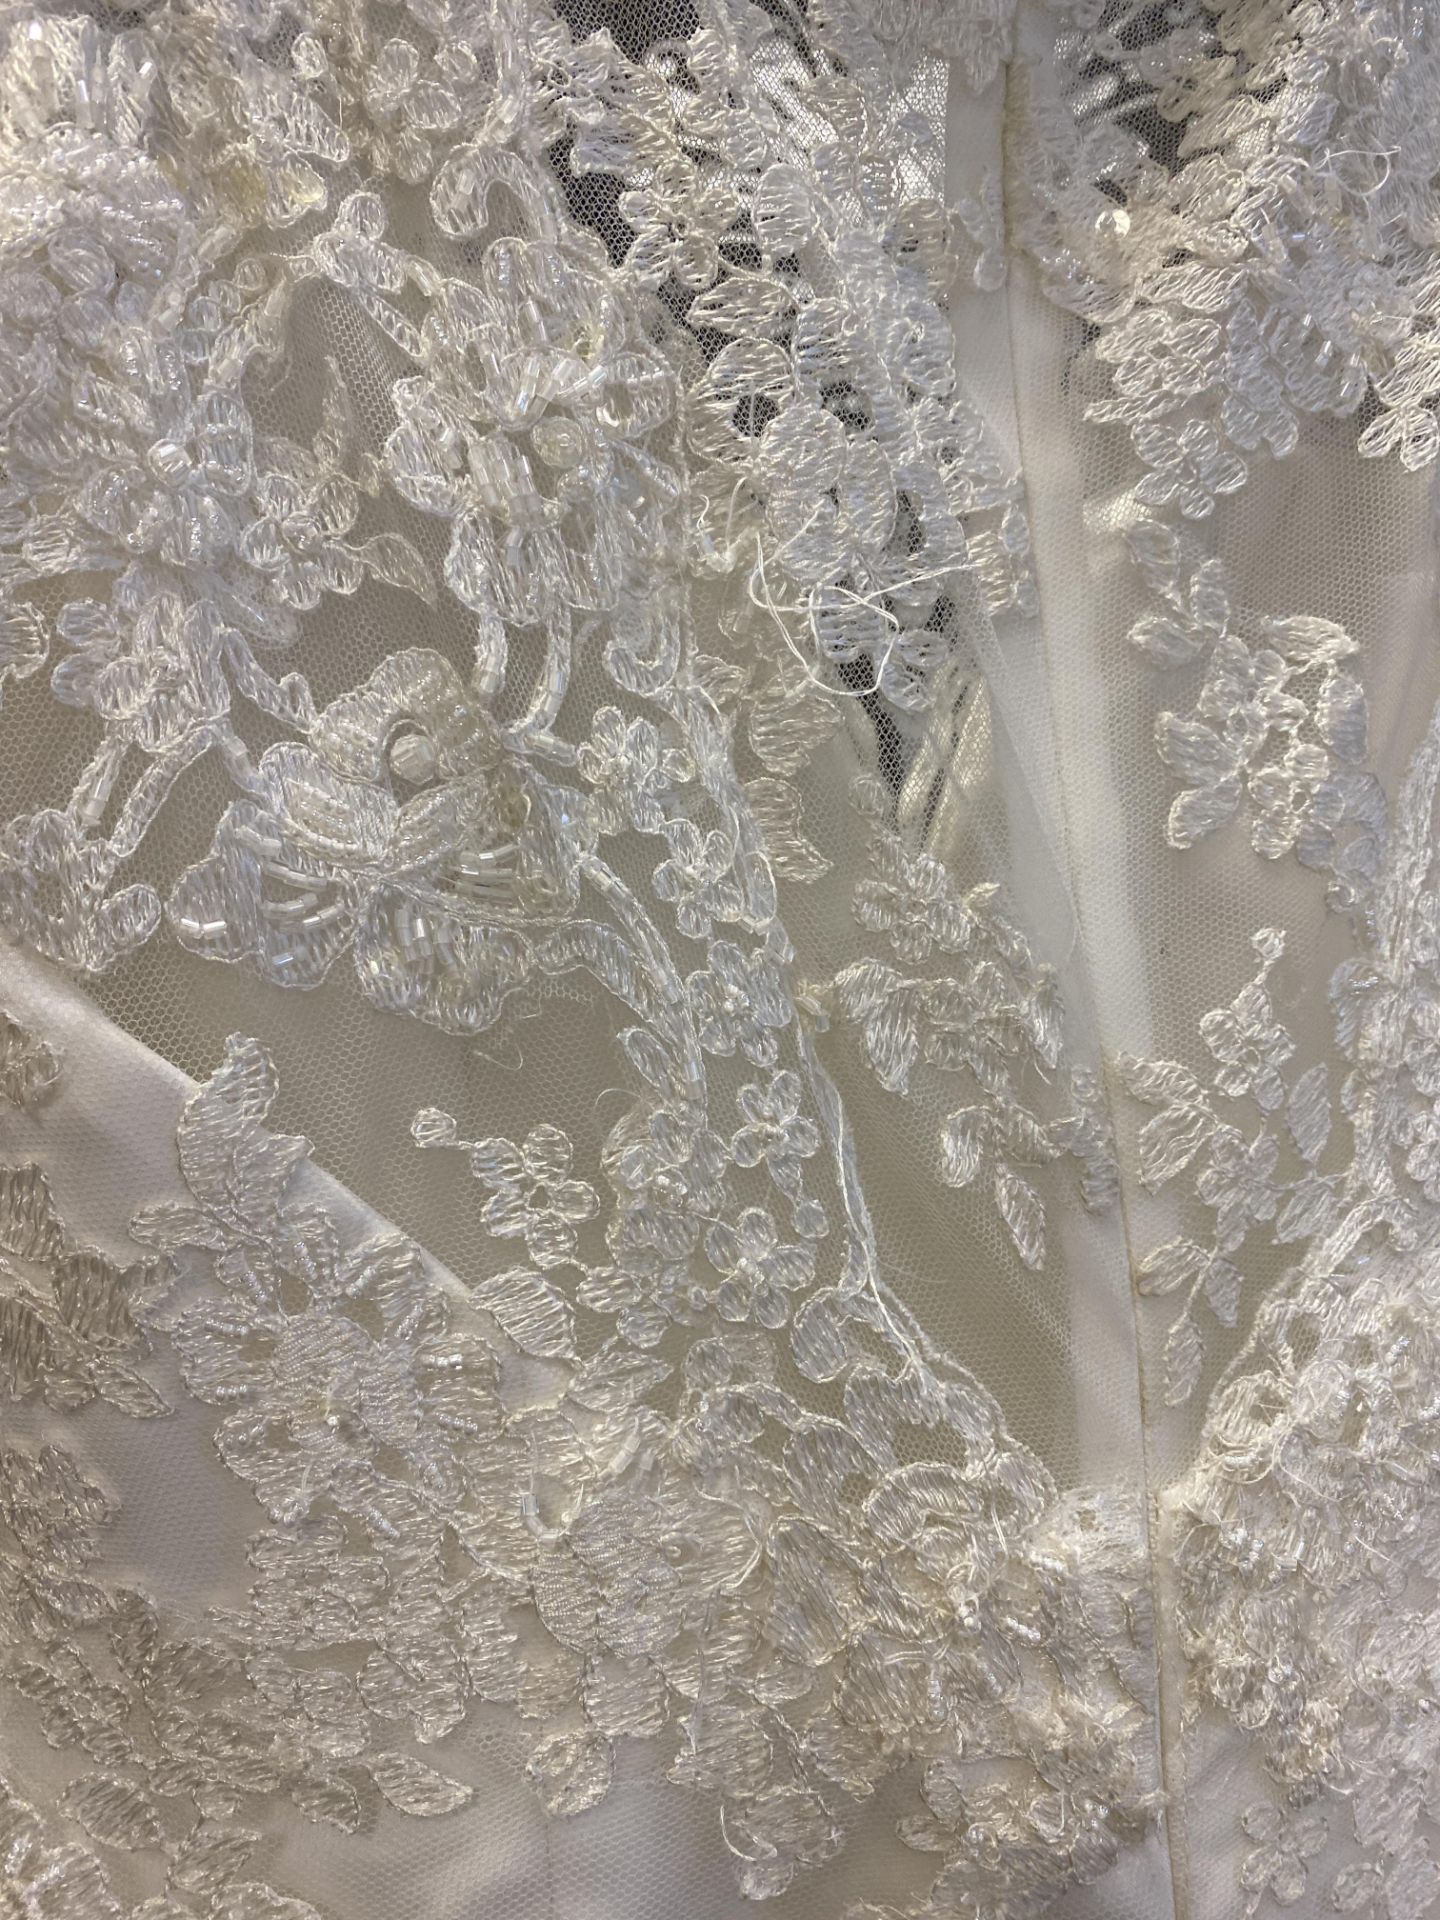 1 x LUSAN MANDONGUS 'Seychelle' Lace Overlay Biased Cut Designer Wedding Dress RRP £1,500 UK10 - Image 7 of 9